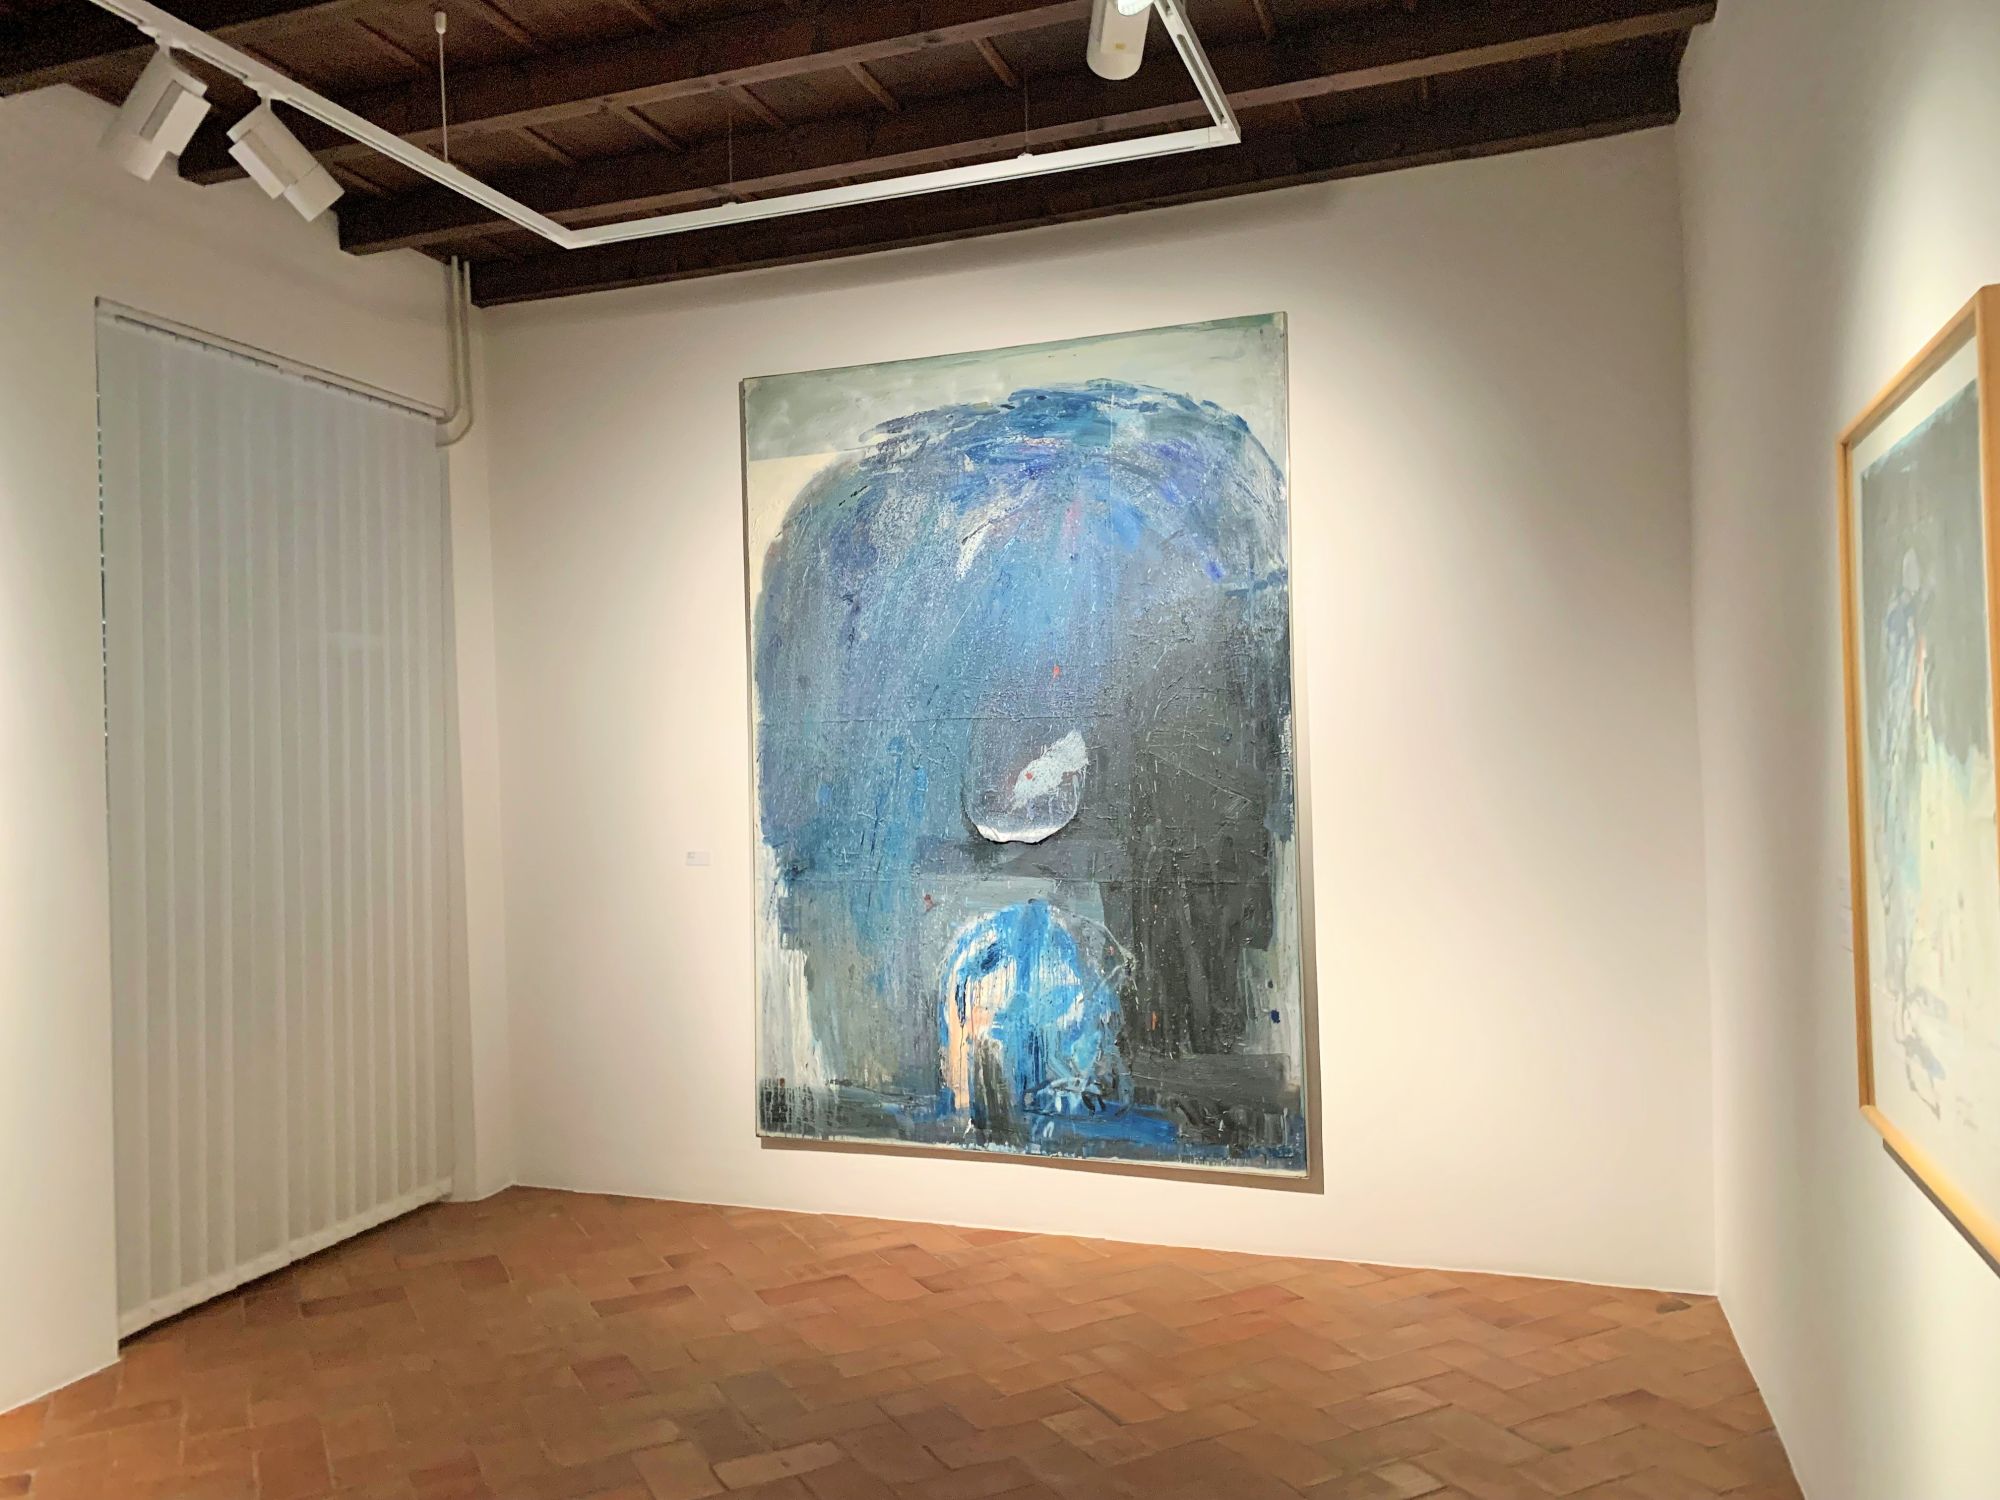 Mostra "La terra trema" di Cesare Lucchini, al Museo d'arte di Mendrisio, dal 25 marzo 2023 al 25 giugno 2023